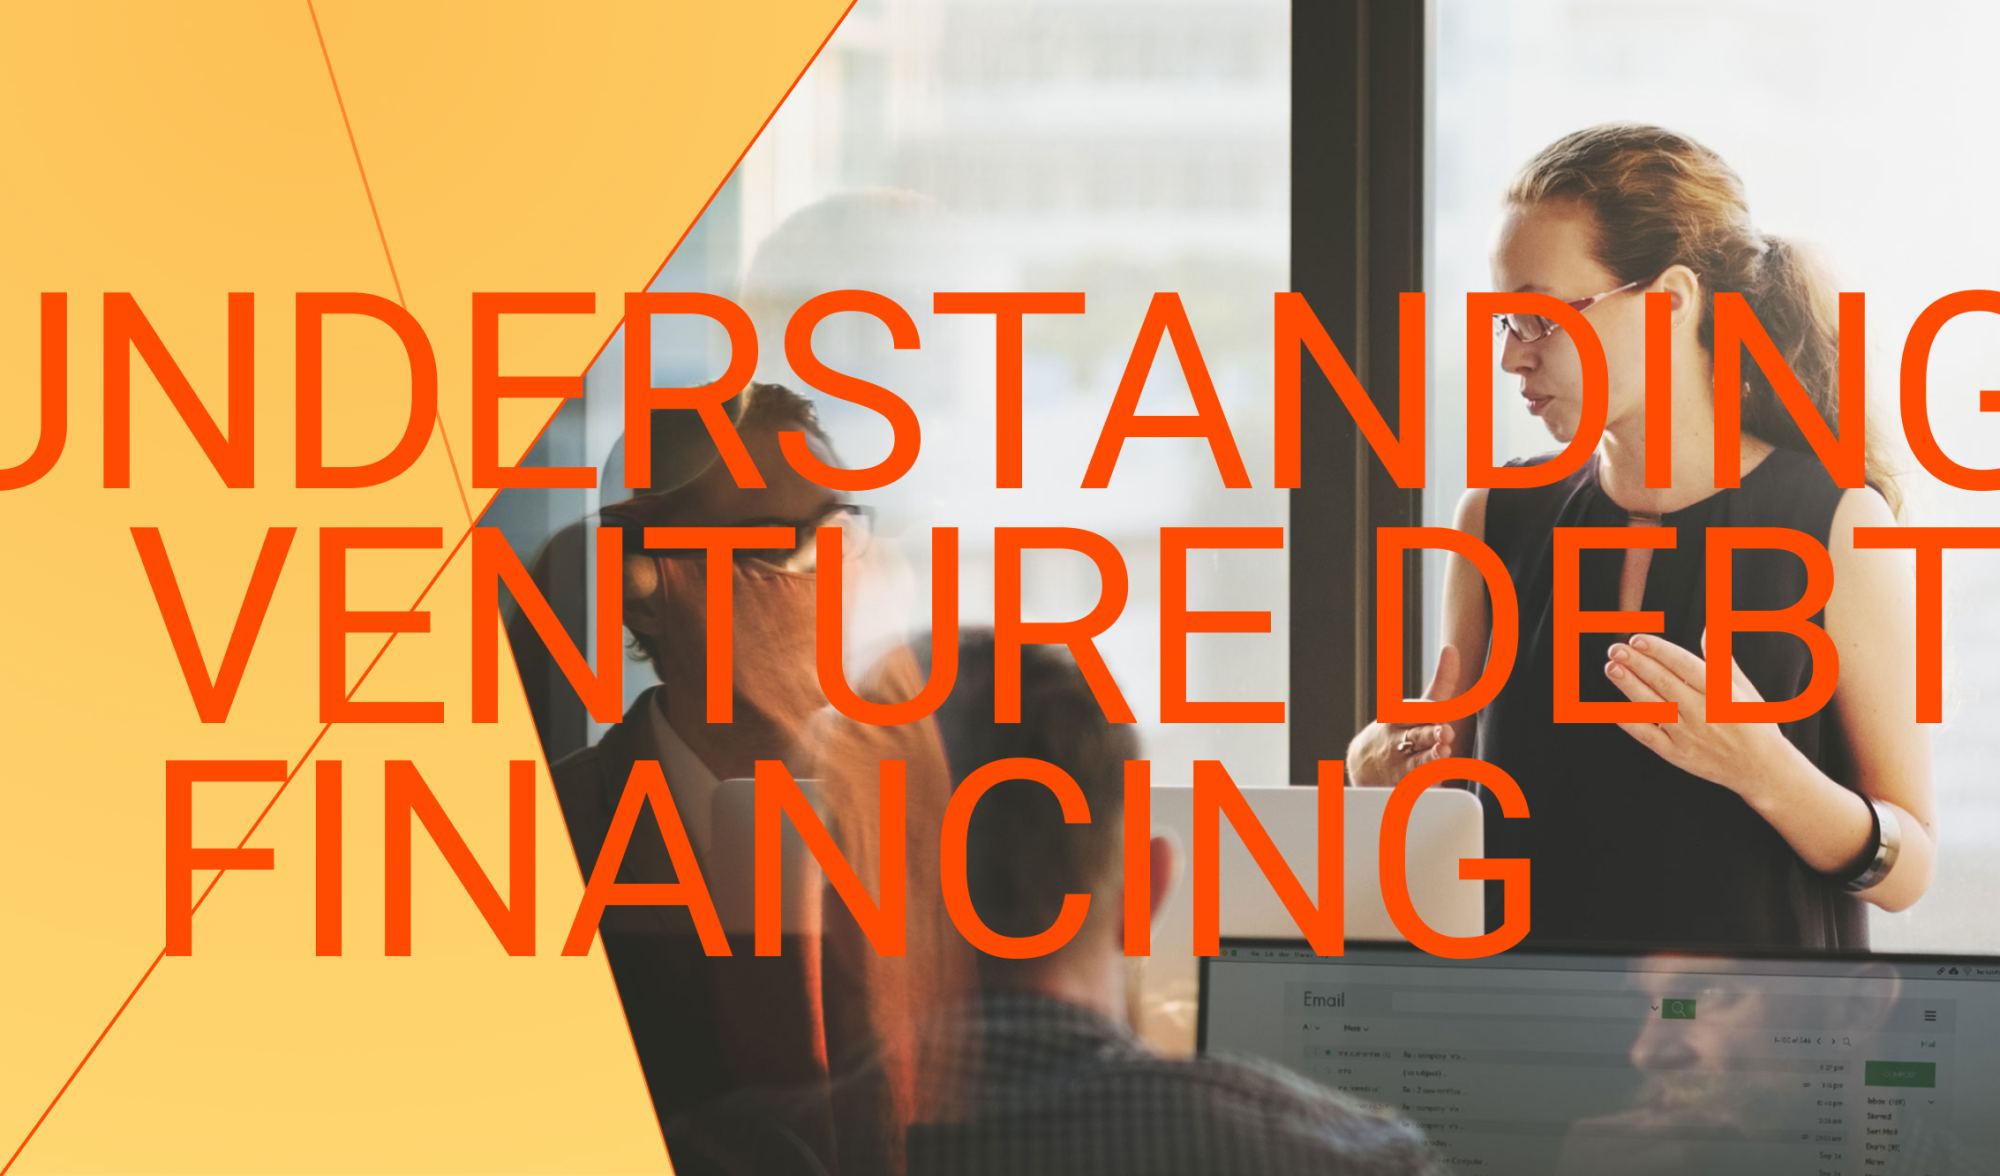 Understanding Venture Debt Financing